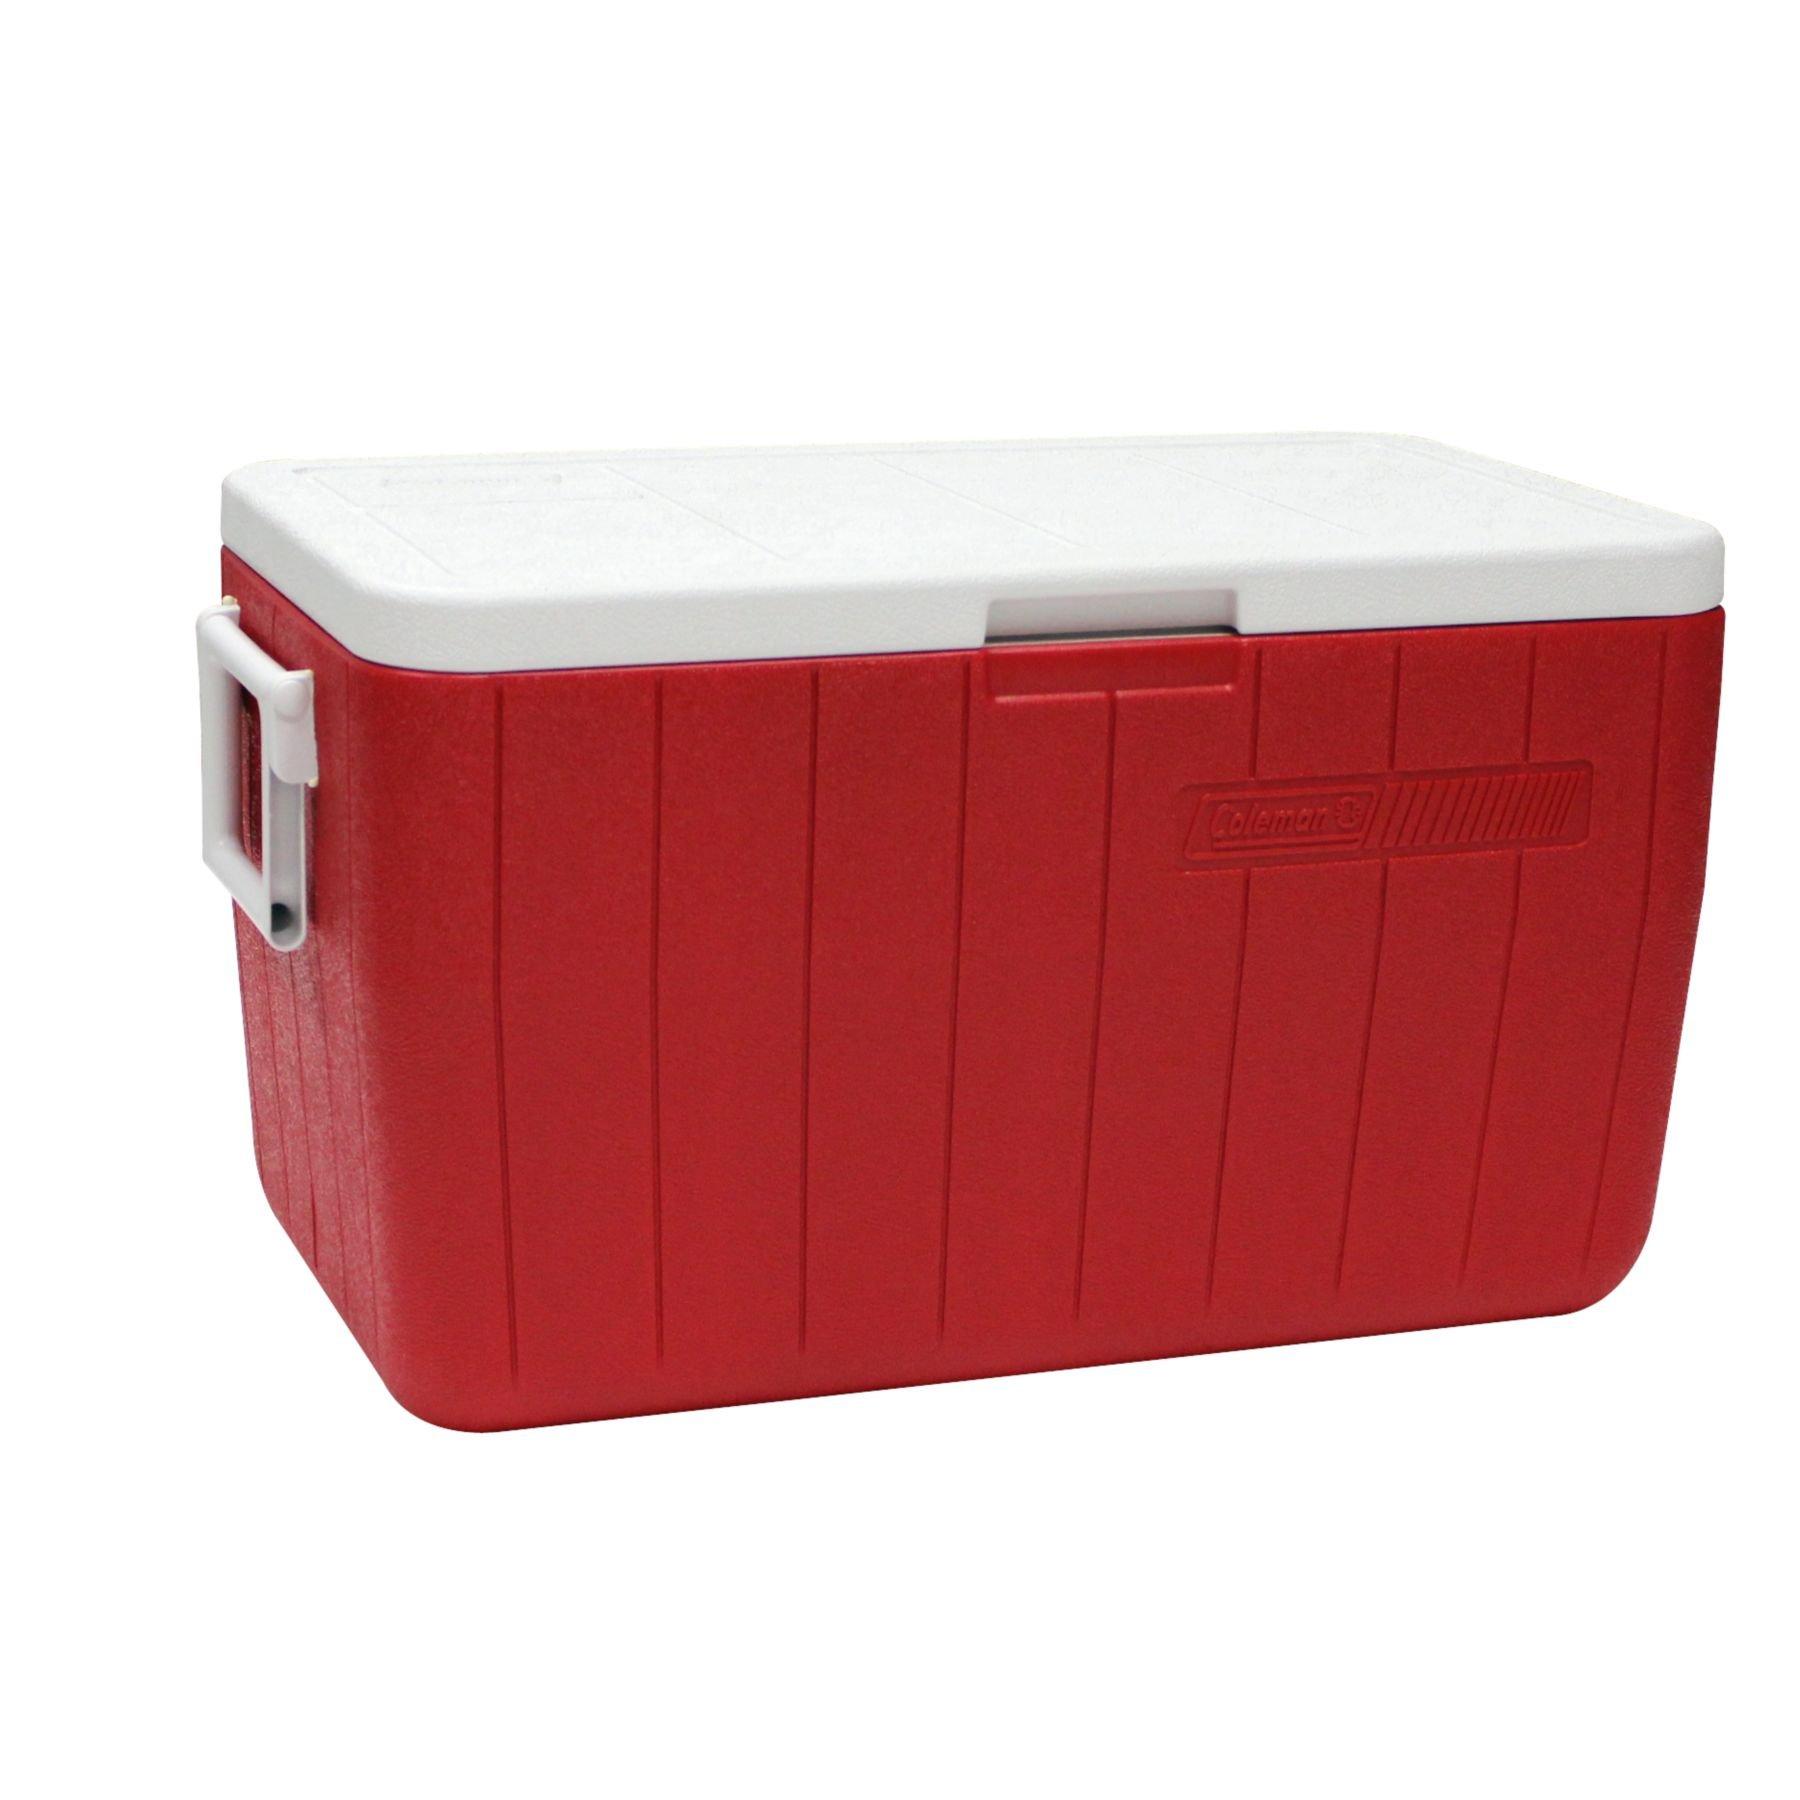 صندوق تبريد 46.5 لتر - أحمر COLEMAN COOL BOX 48QT RED